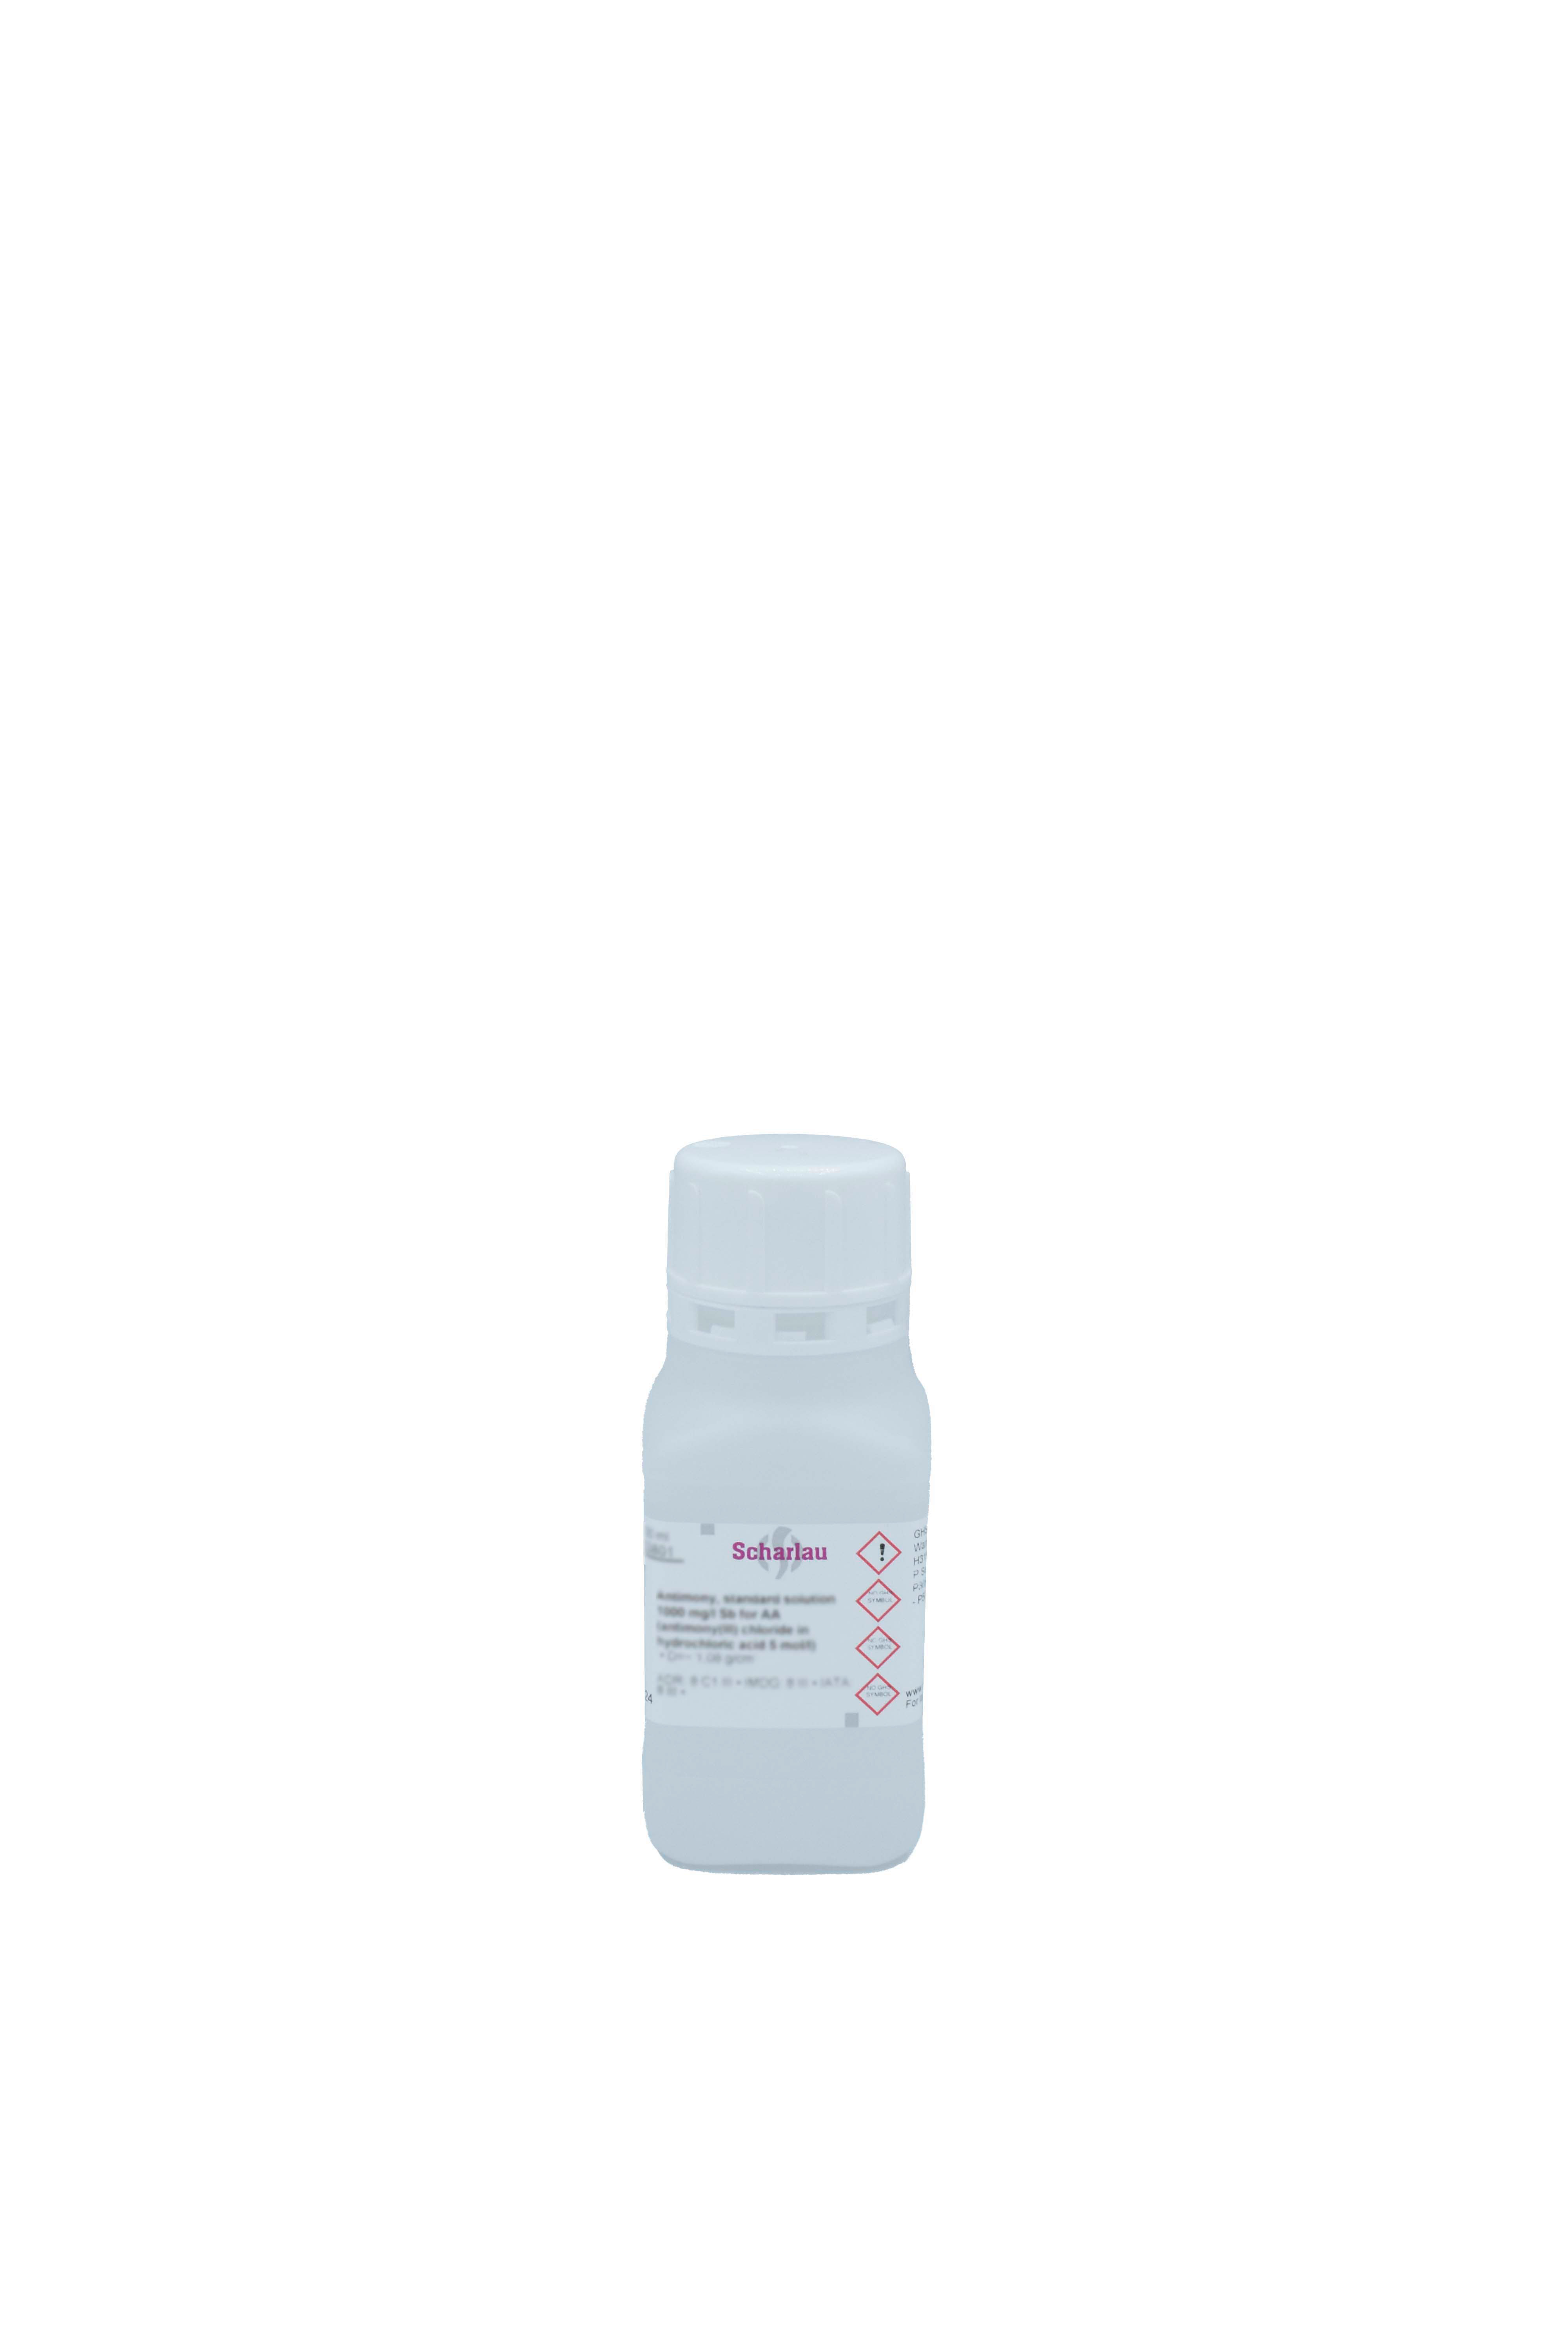 Boro, solución patrón 1000 mg/l B para AAs (ácido bórico en agua)